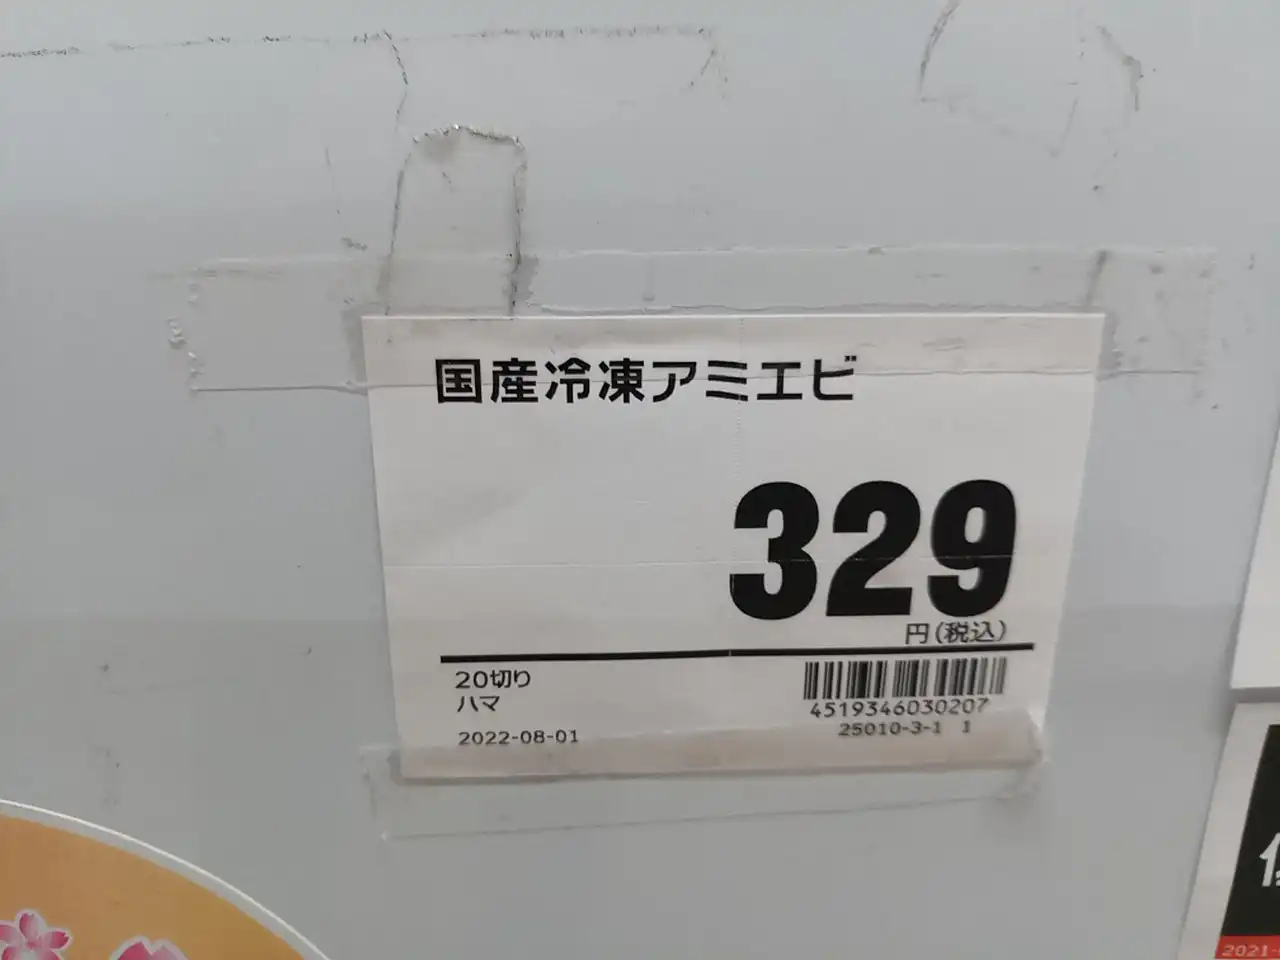 アミエビ20切り329円